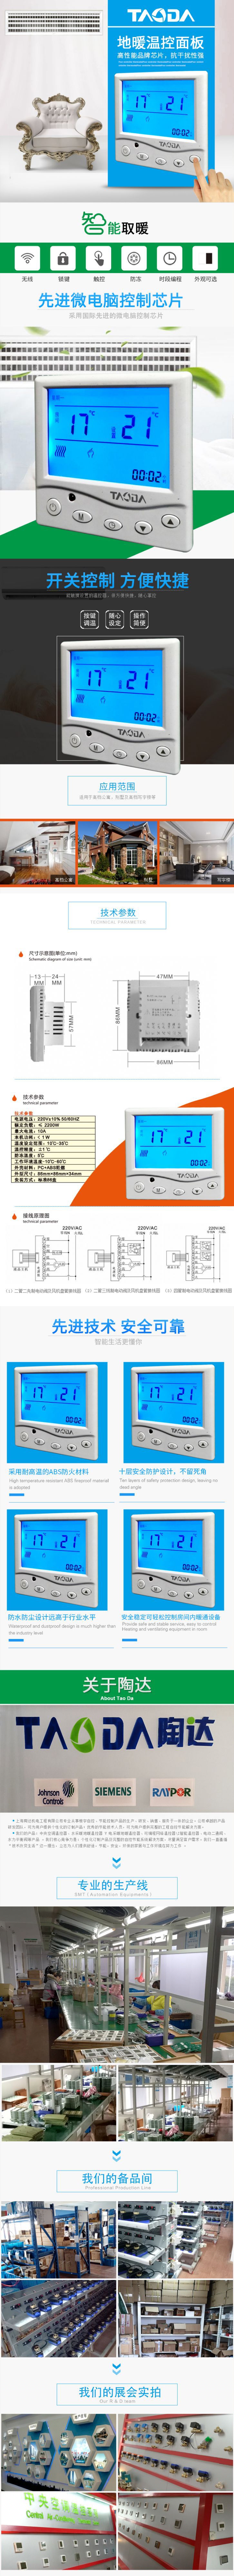 壁挂炉地暖温控器 水采暖壁挂炉温控器 壁挂炉温控器有线 陶达示例图1